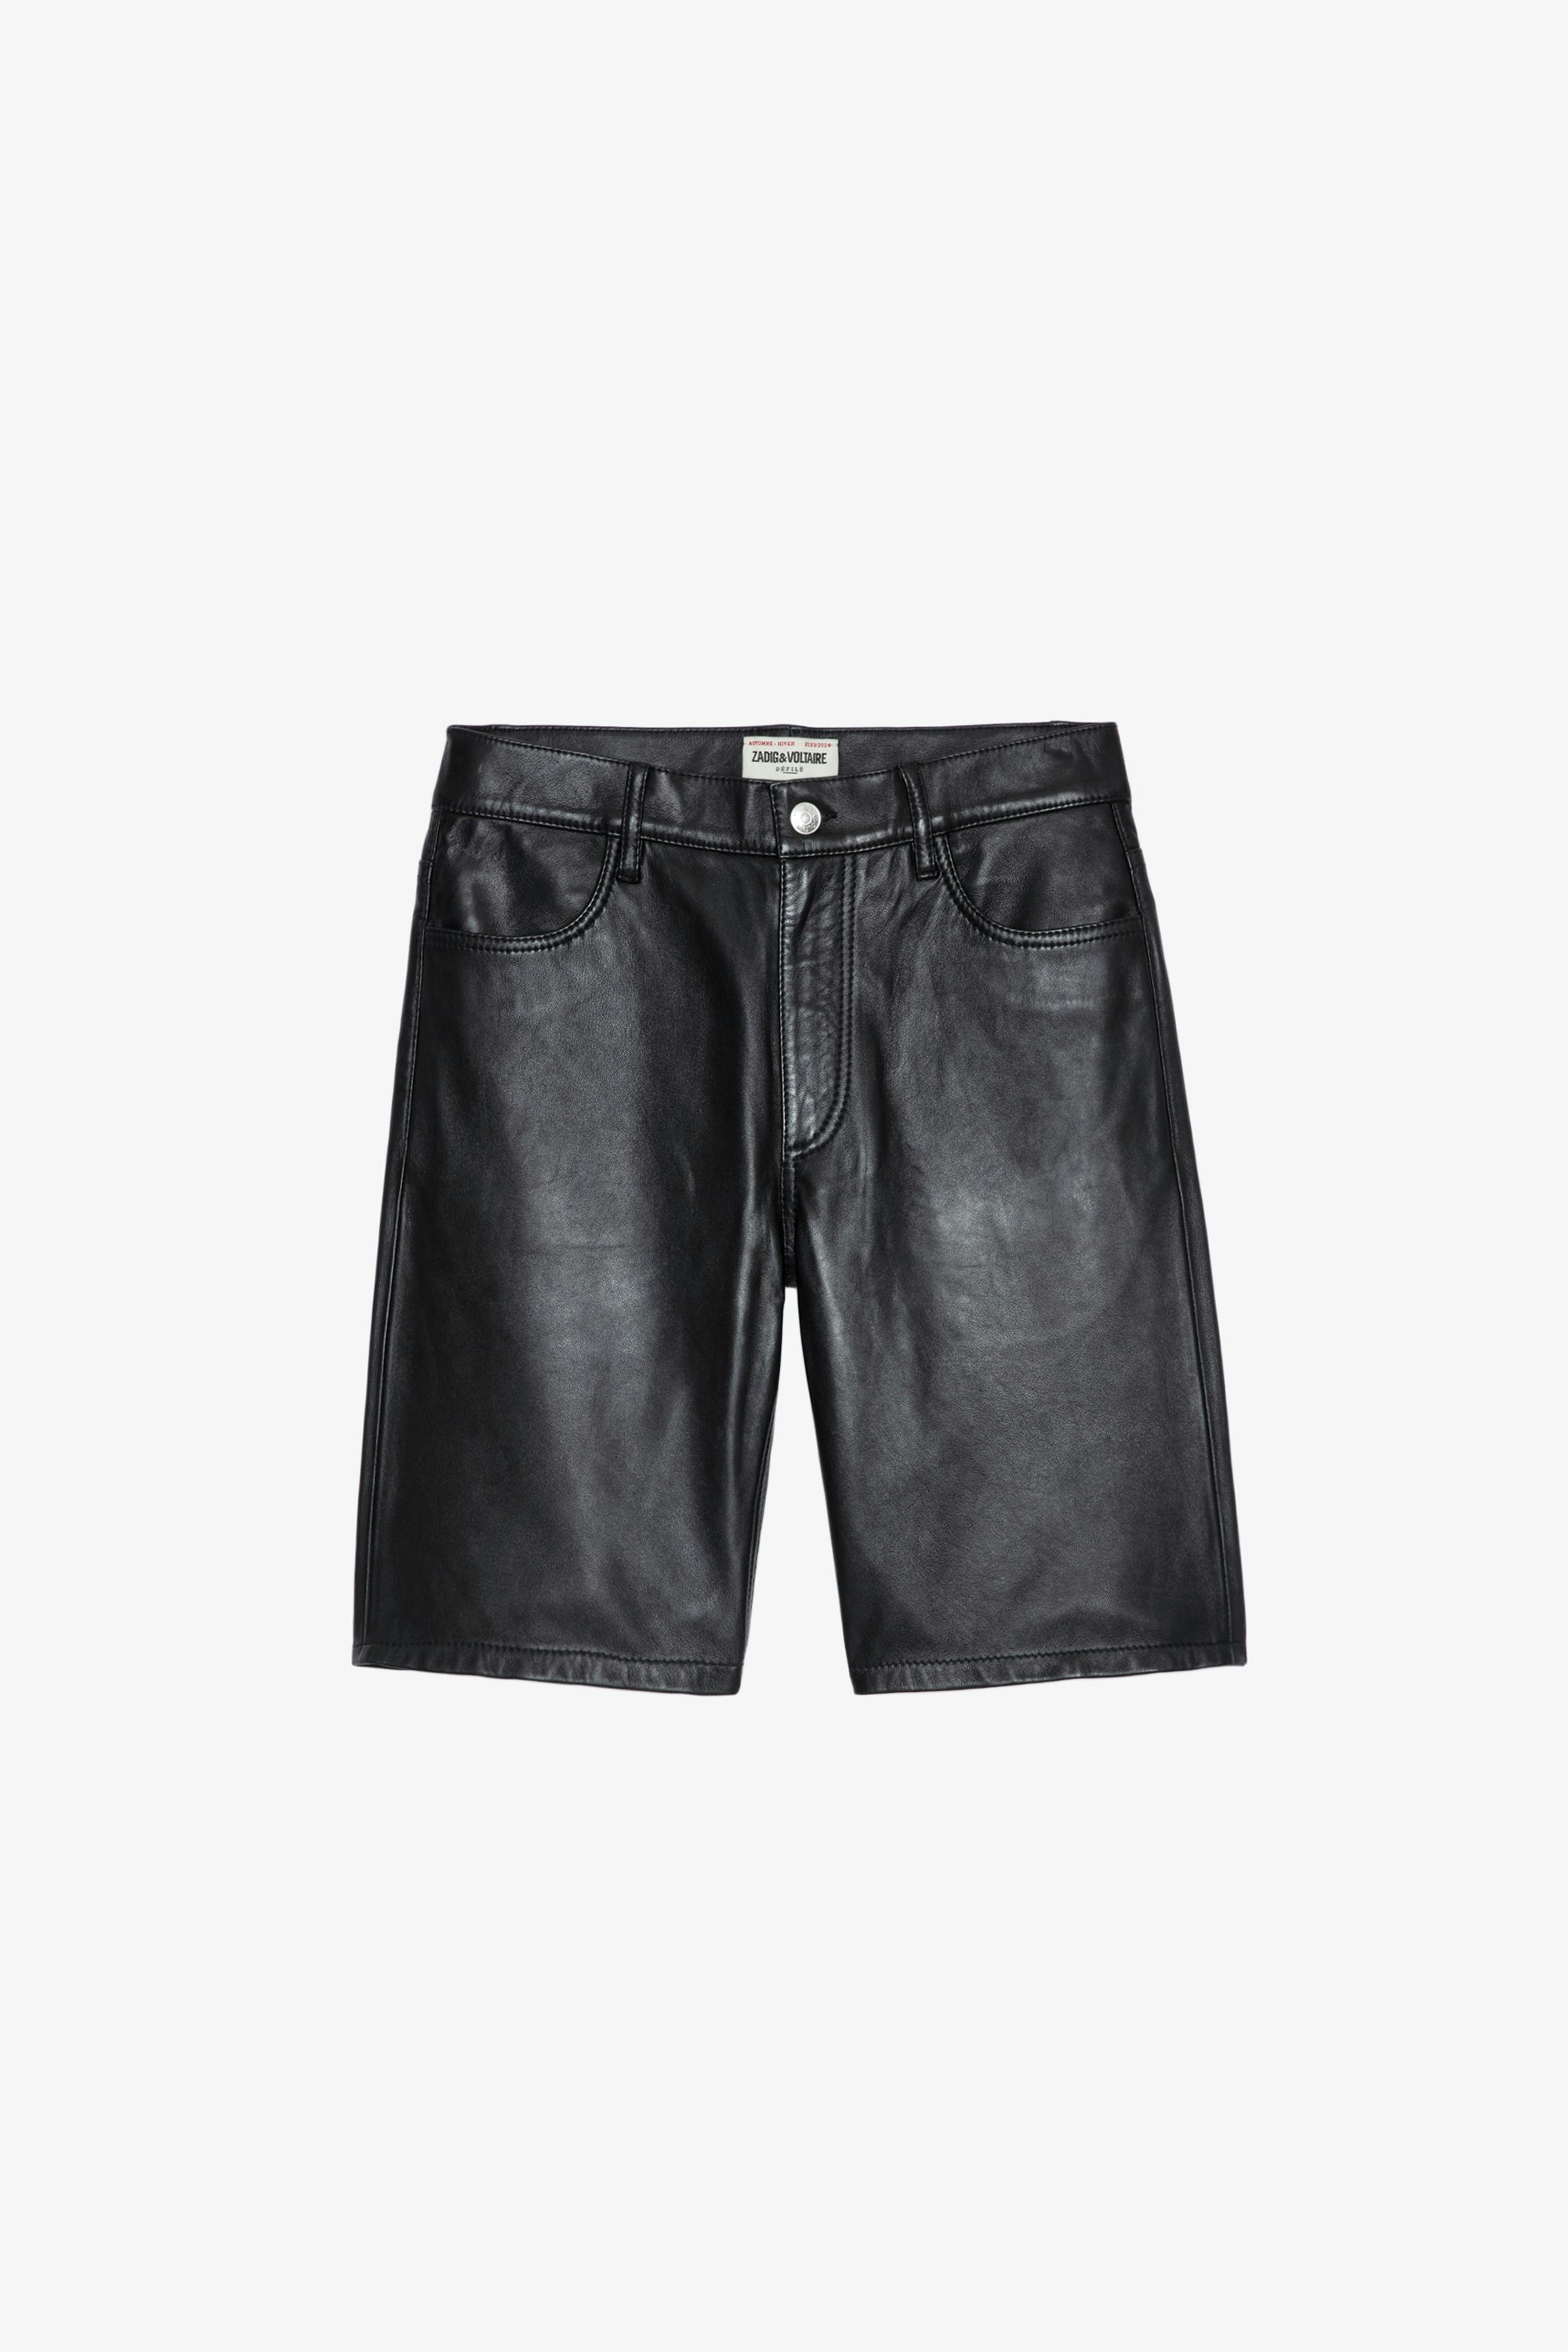 Sady Leather Shorts - Women’s black smooth Bermuda shorts.